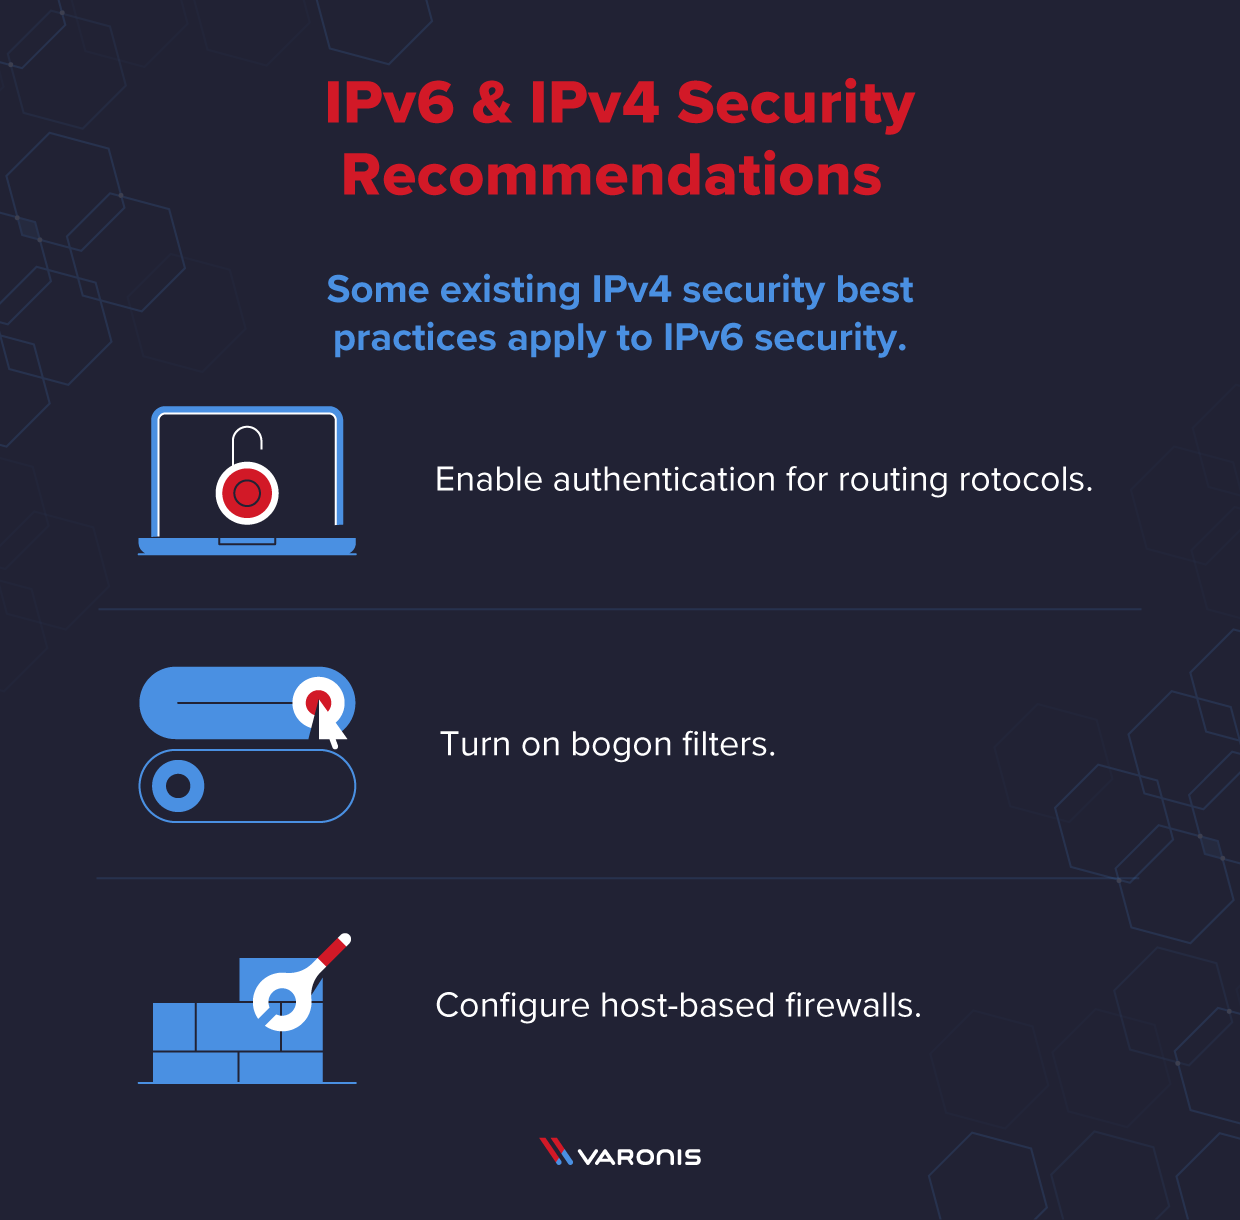 Drei IPv4-Sicherheitsempfehlungen, die auch für die IPv6-Sicherheit gelten